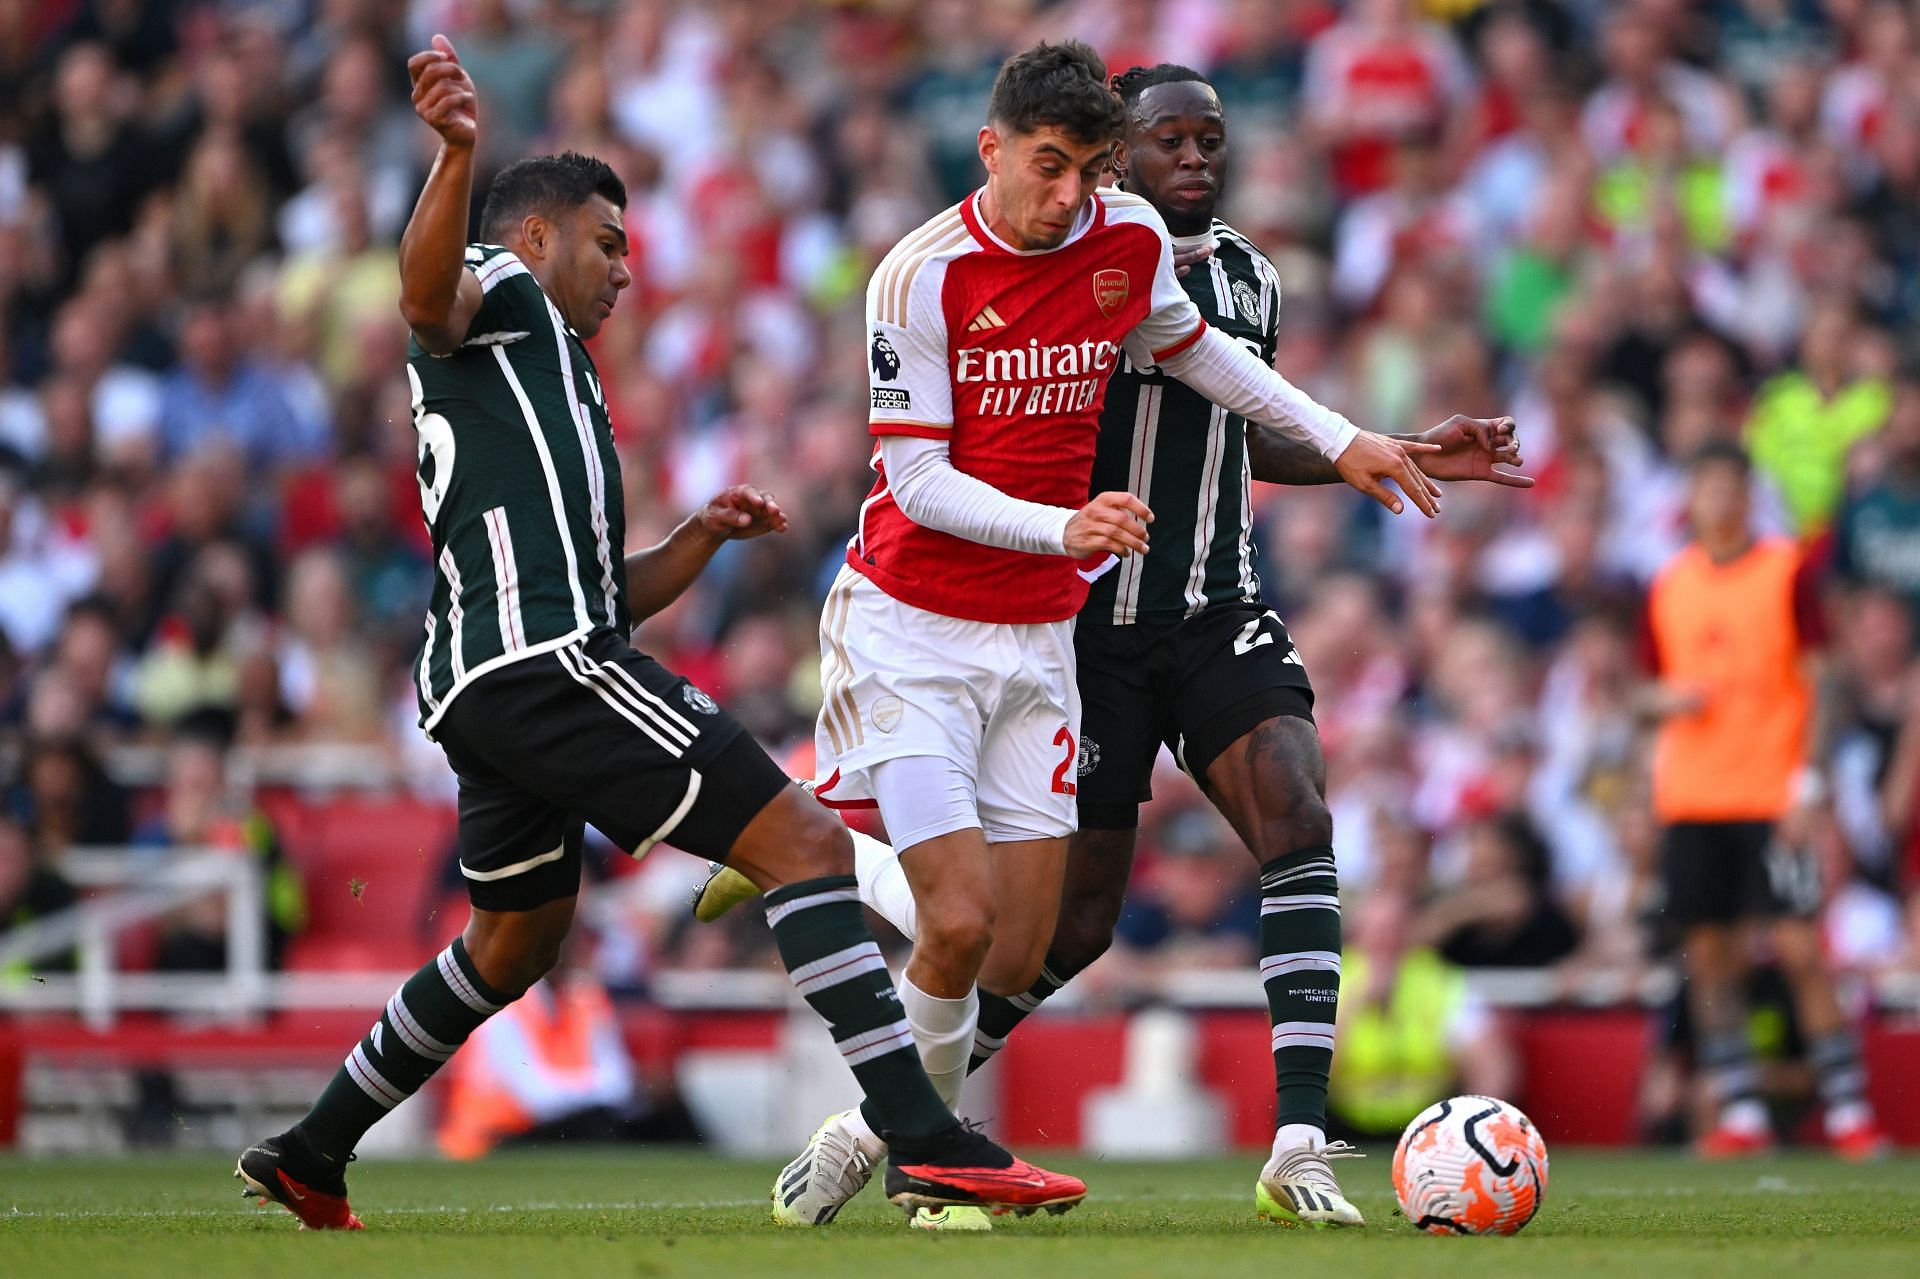 Kai Havertz for Arsenal (via Getty Images)